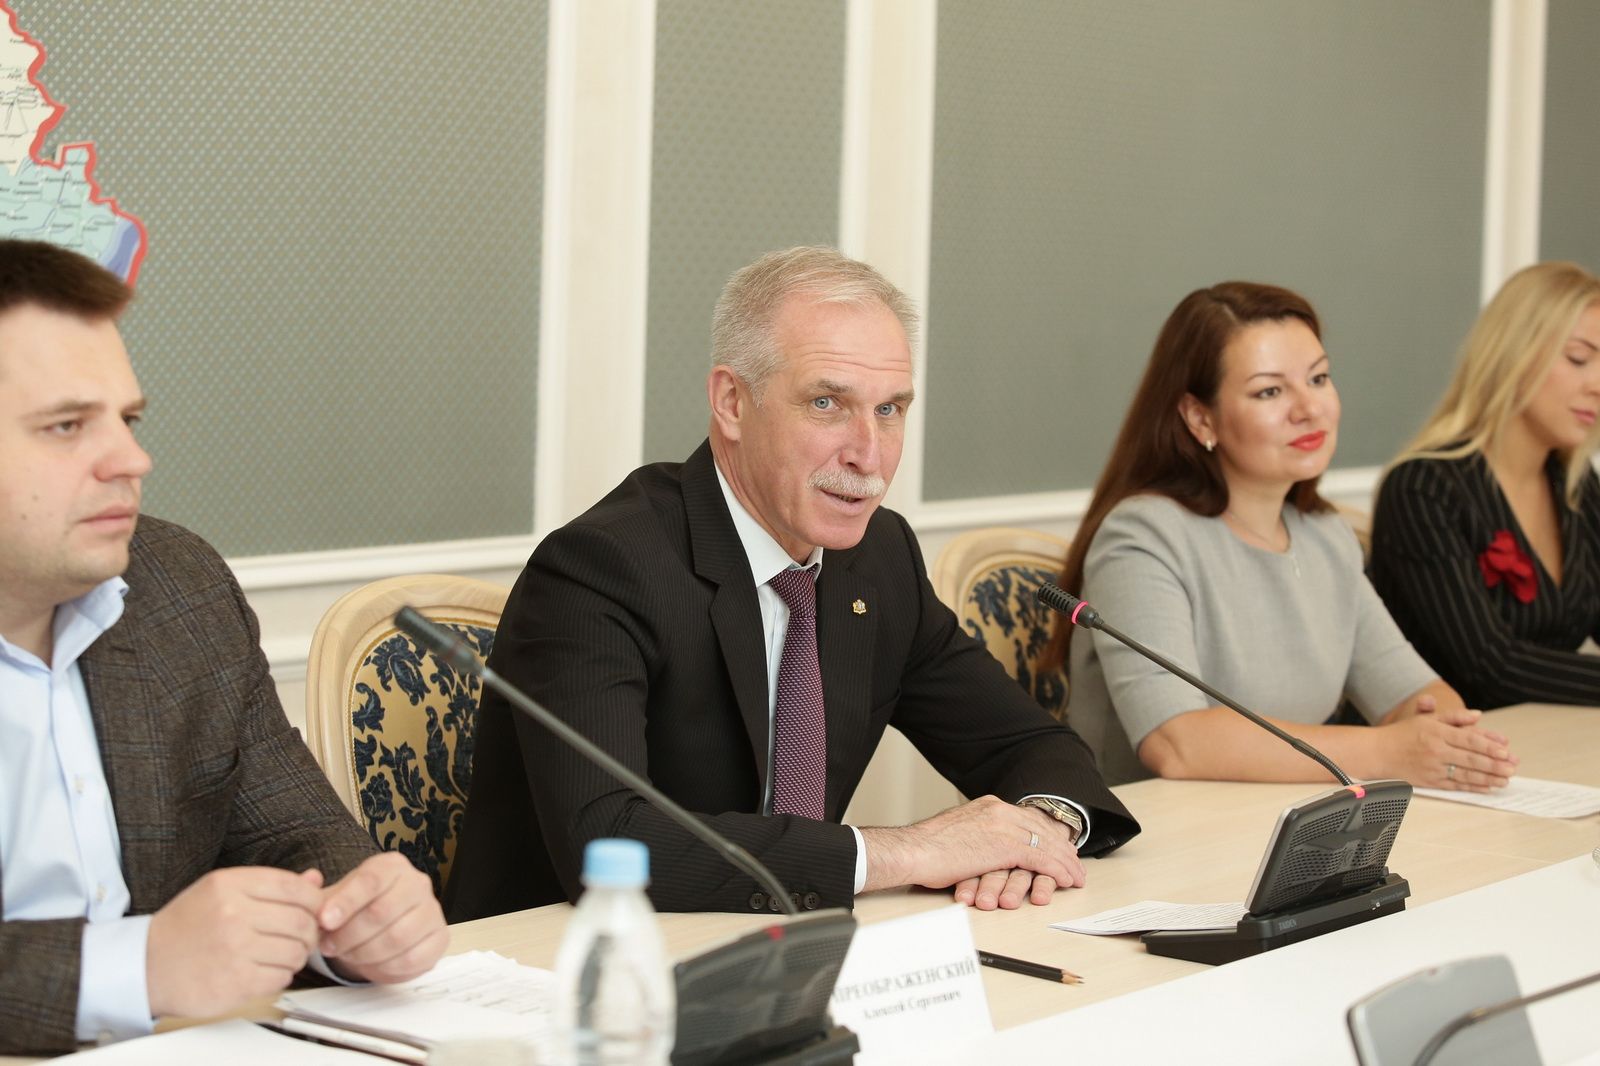 Ульяновское региональное отделение Ассоциации юристов России подписало соглашение с Адвокатской палатой региона